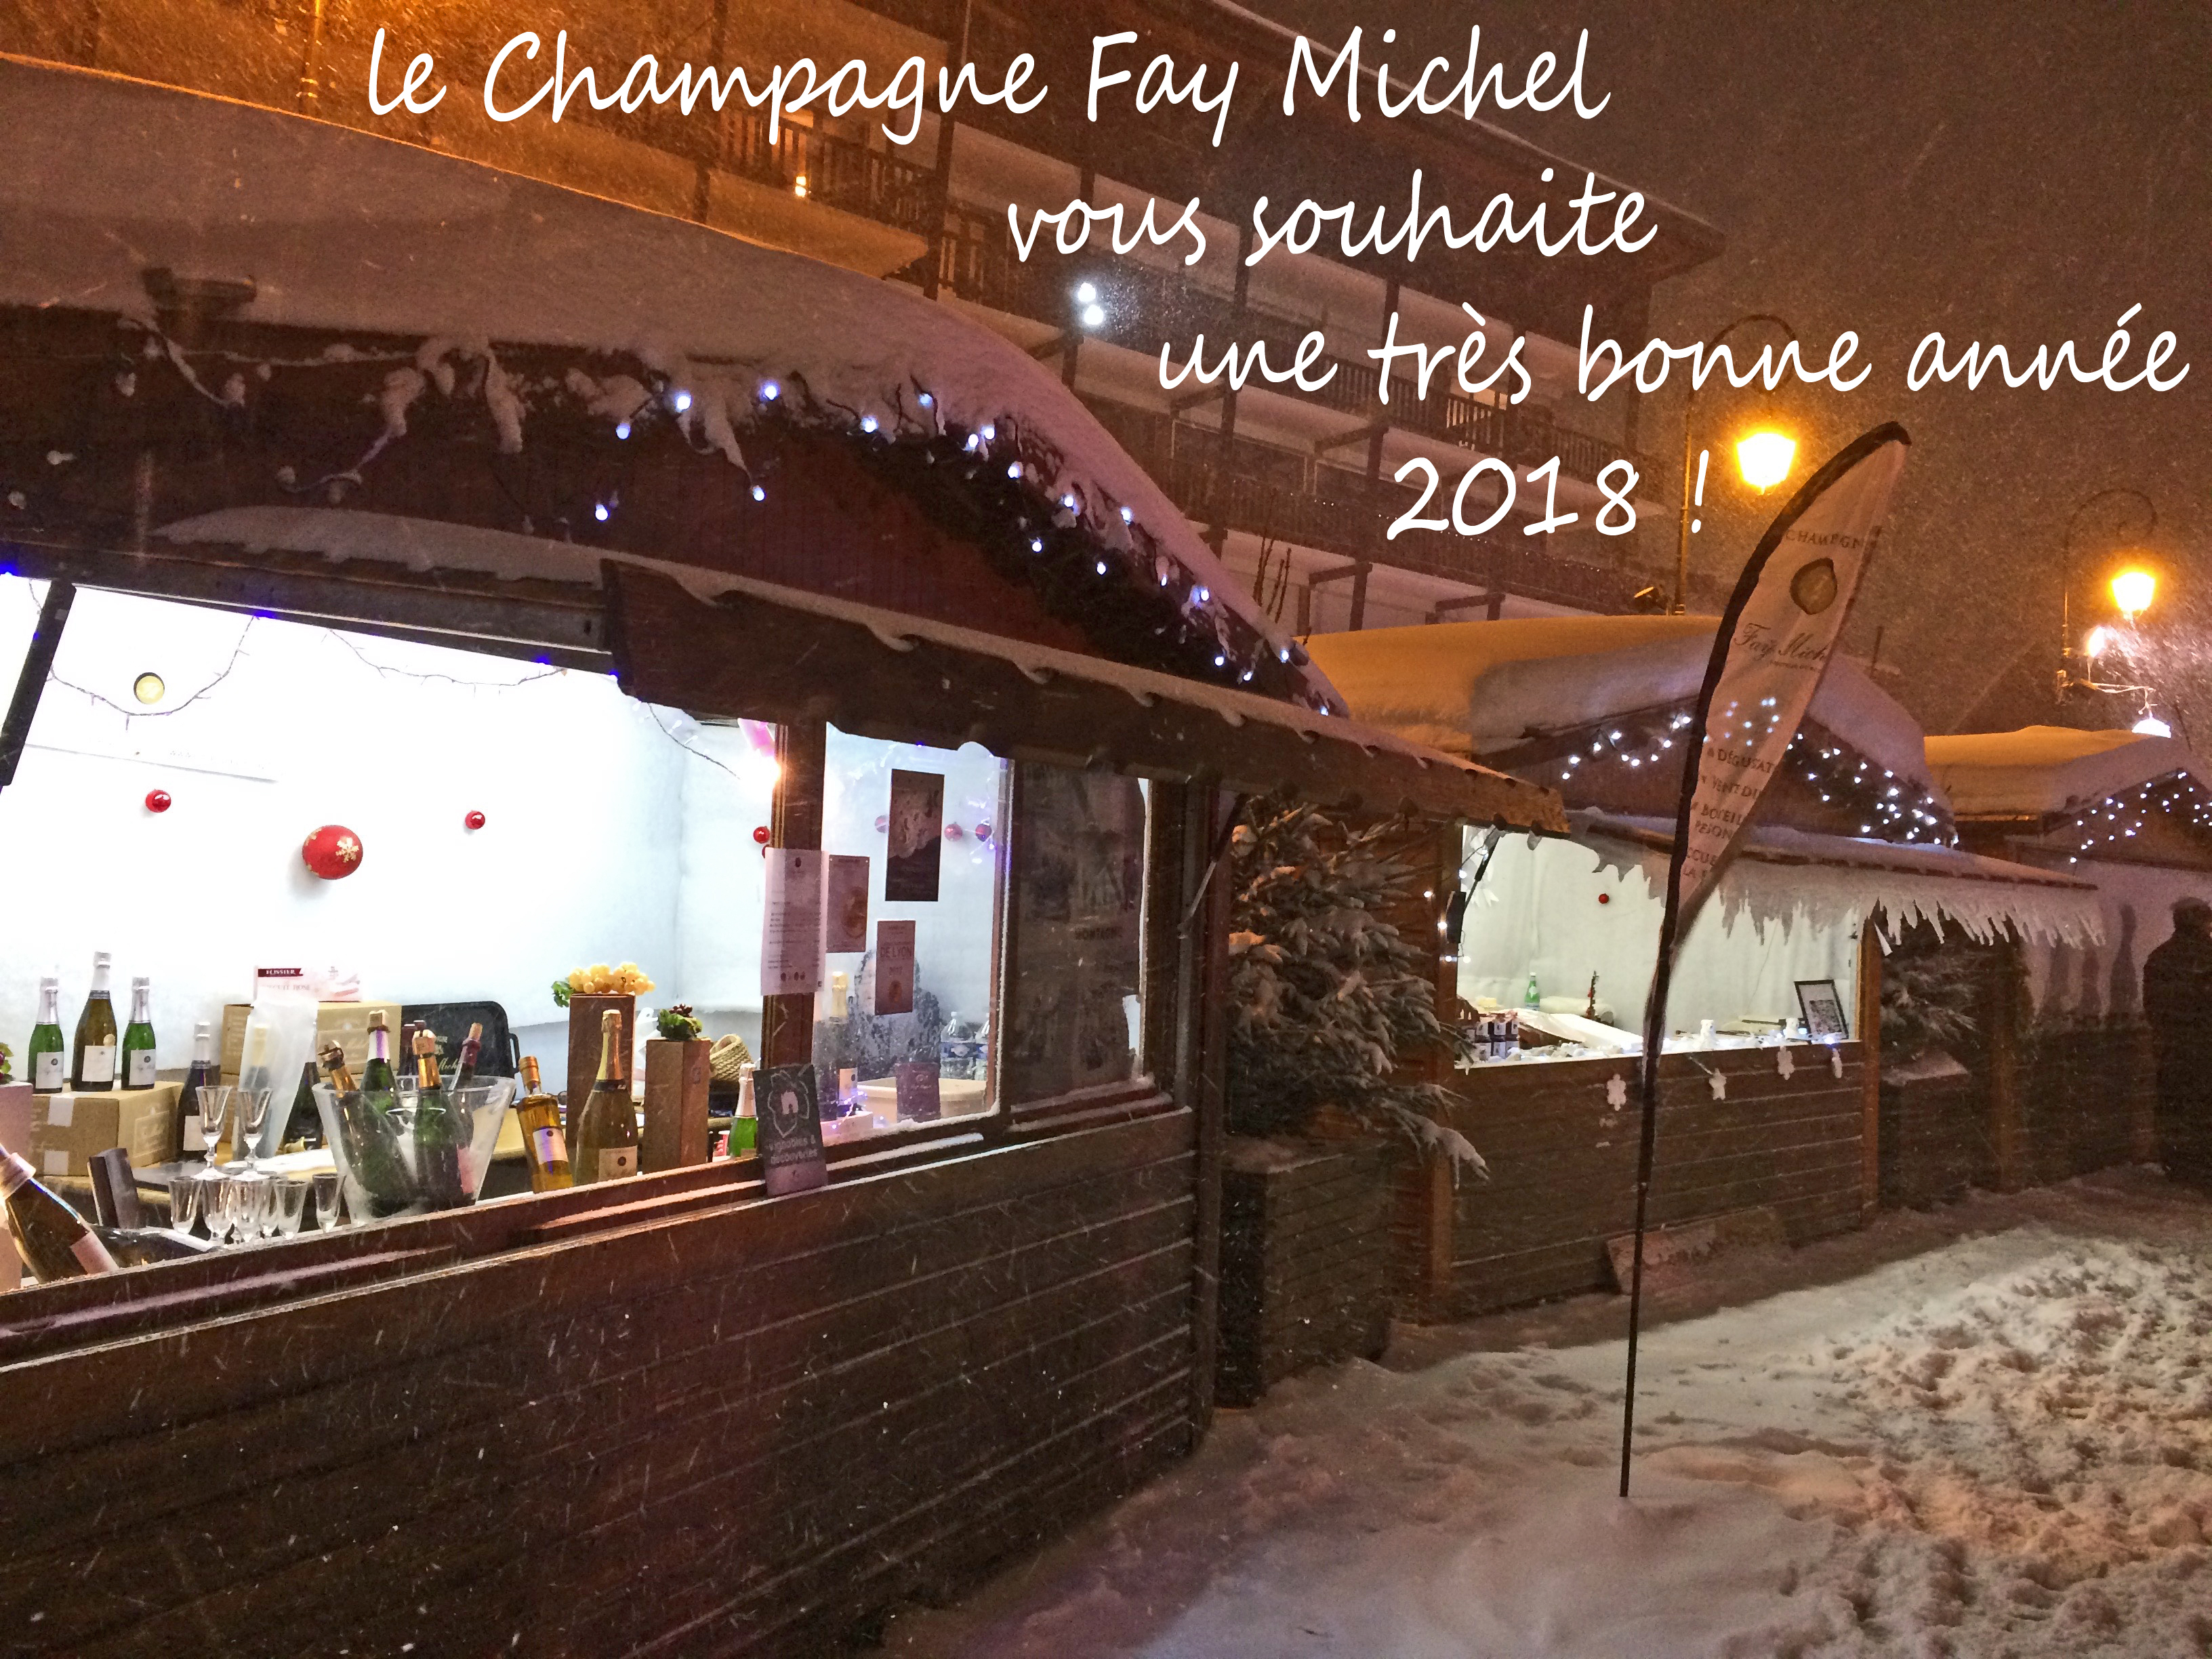 Le champagne Fay Michel présente ses voeux 2018